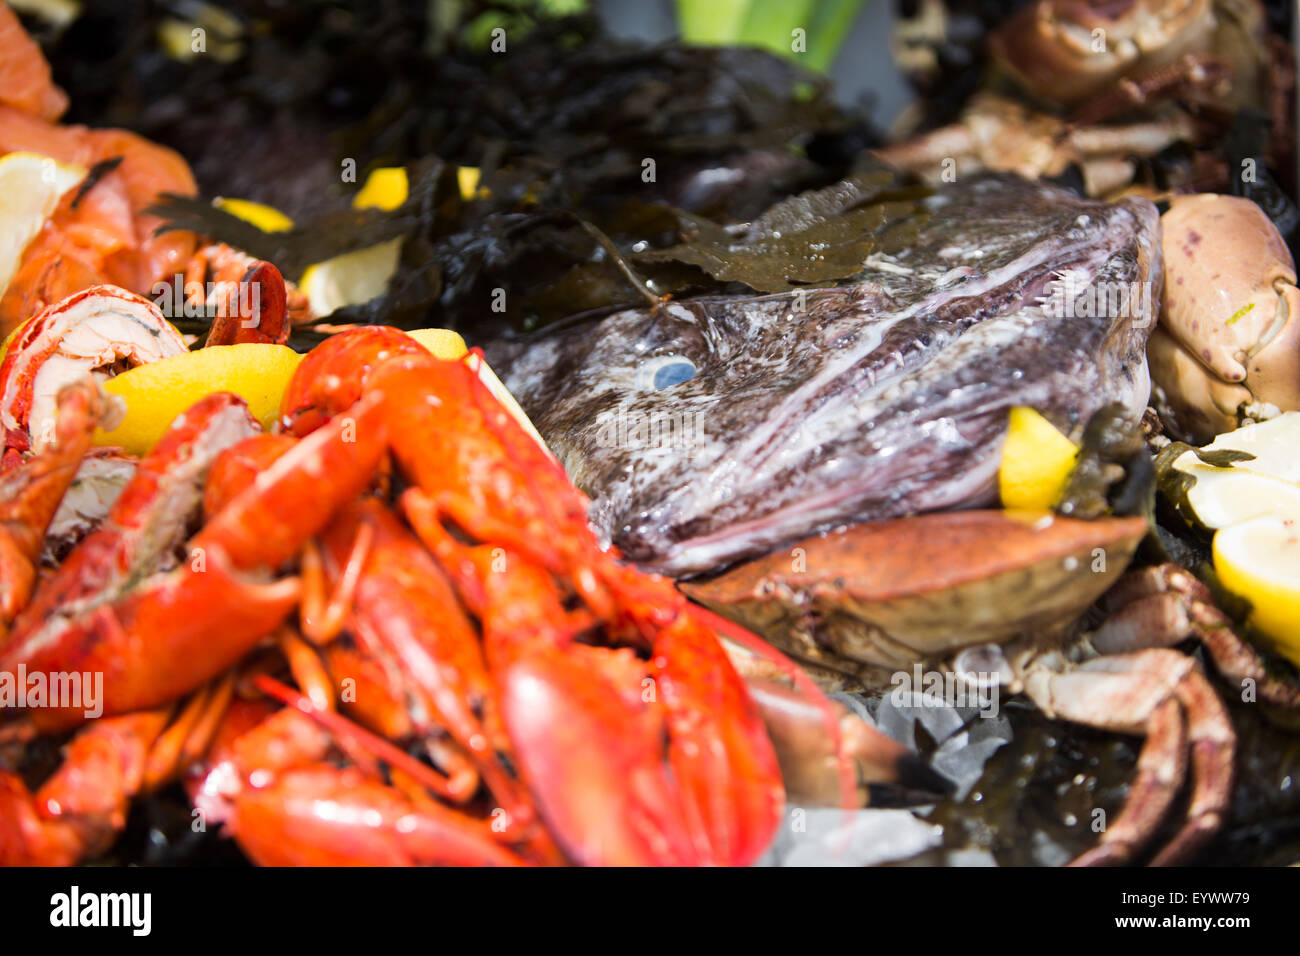 Dettagli dal piatto di frutti di mare. Rana pescatrice con aragosta, salmone affumicato, granchio, alghe e spicchi di limone. Foto Stock